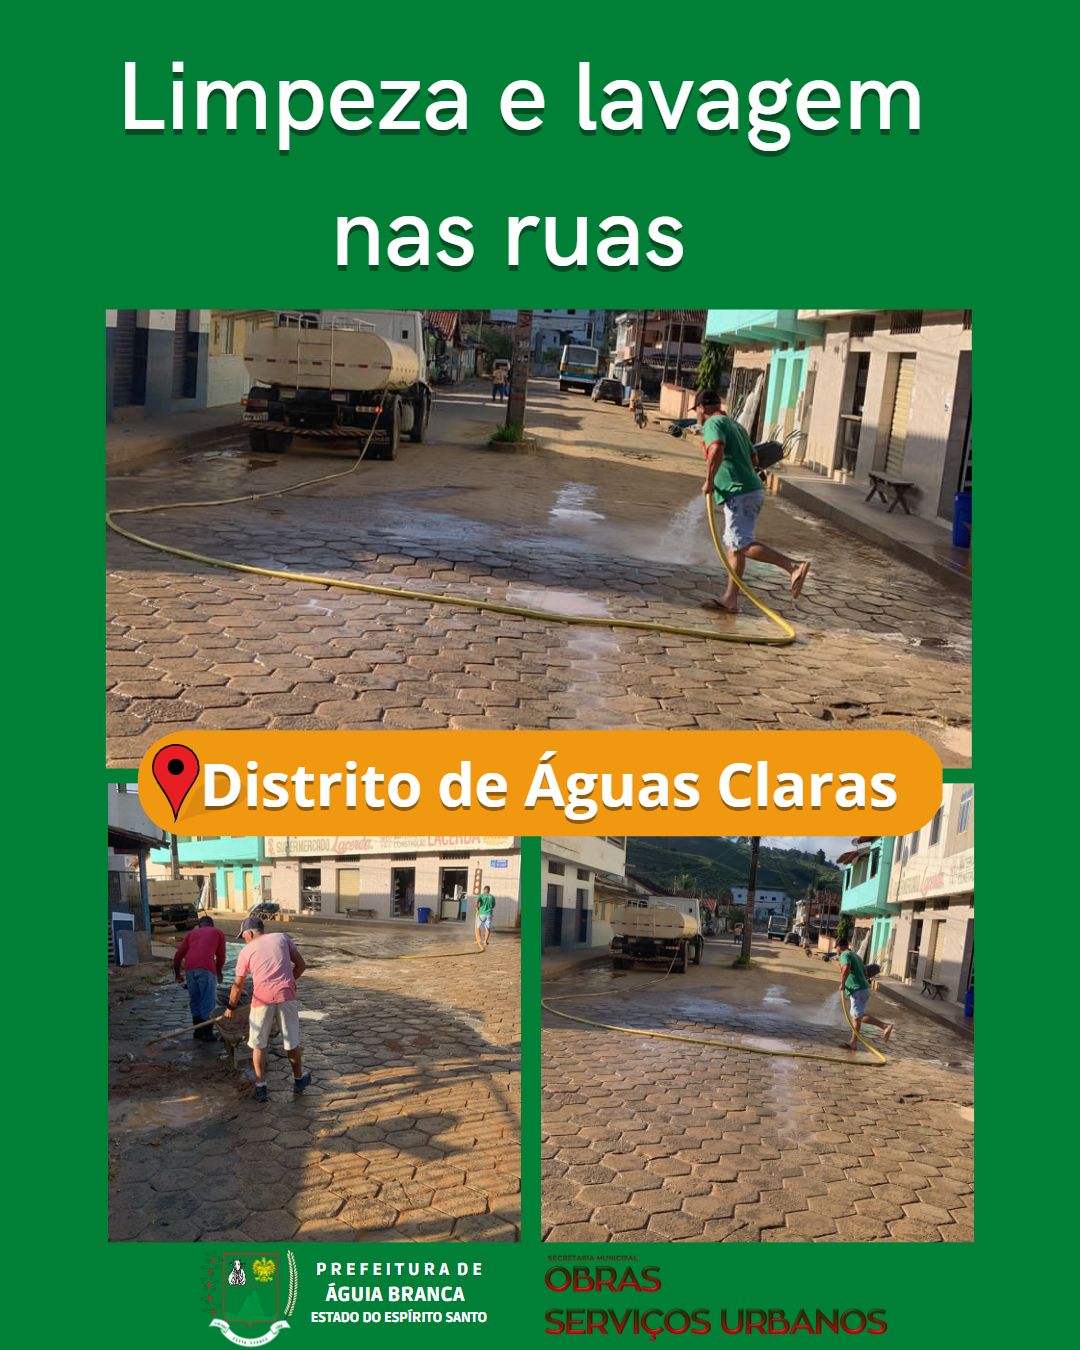  Limpeza e lavagem nas ruas do Distrito de Águas Claras